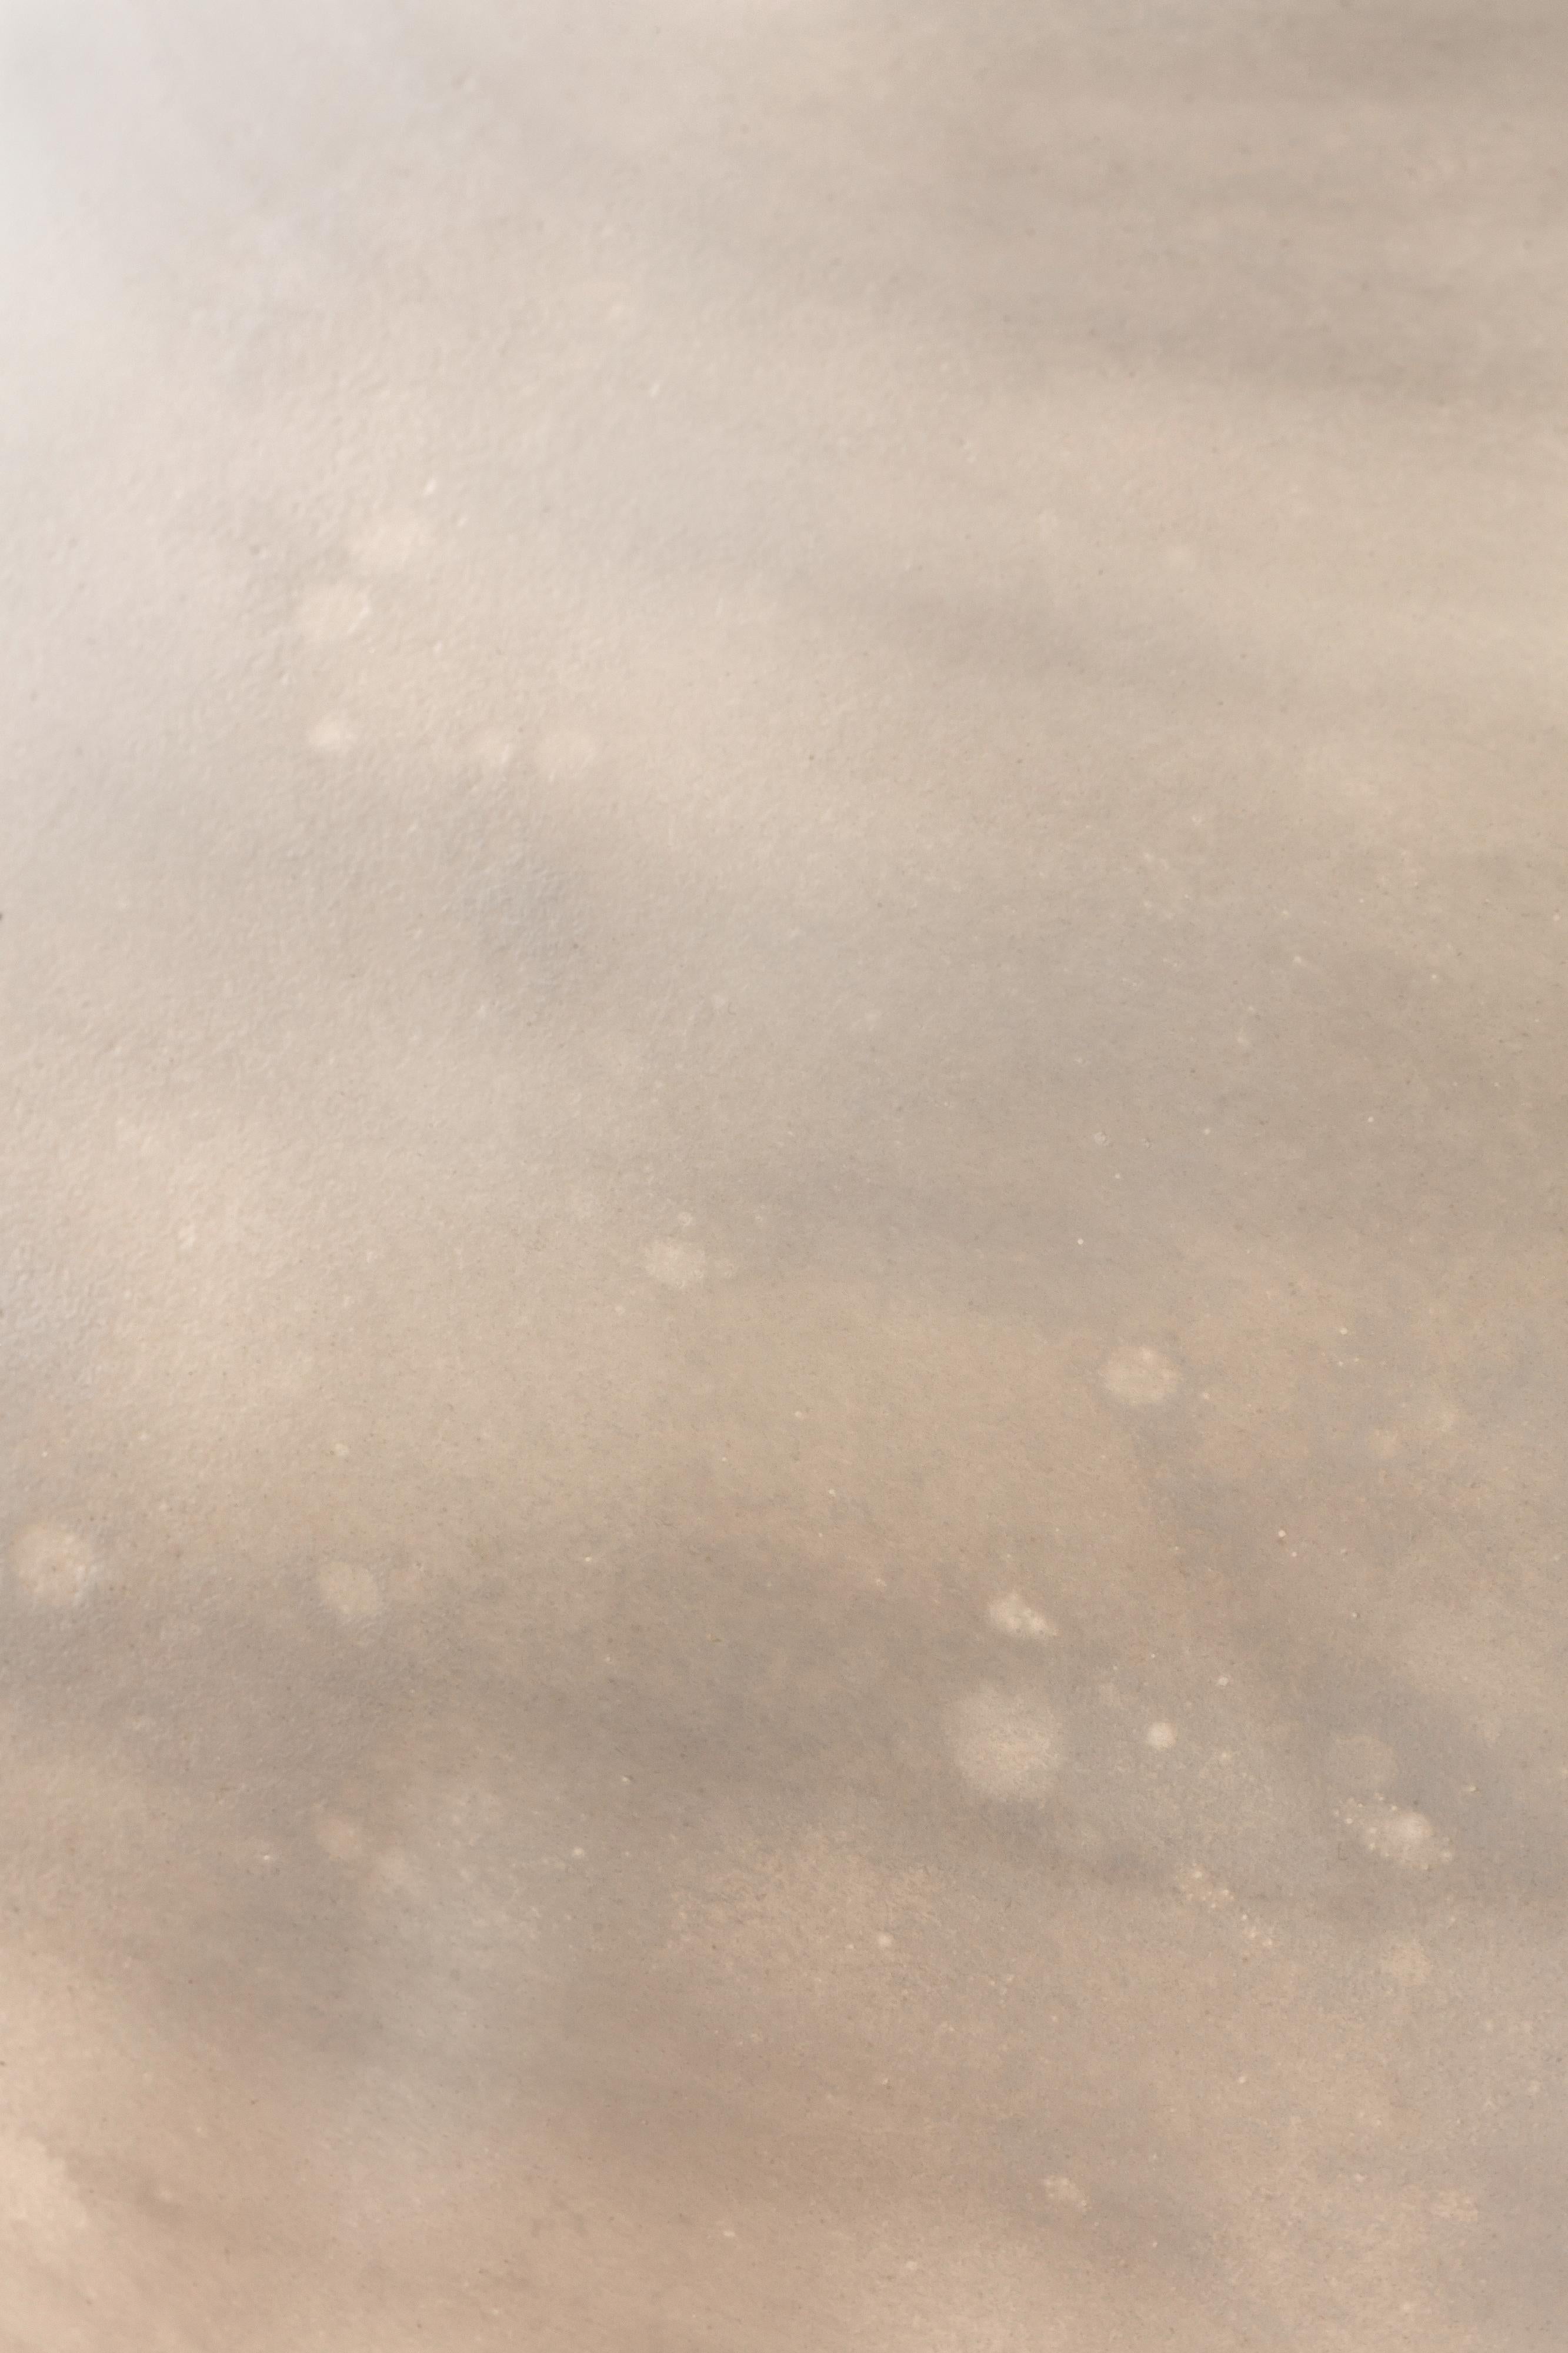 Tischleuchte mit Titan-Skulptur, Ludovic Clément d'Armont.
Geblasenes Glas und Messing.
Abmessungen: 25 x 25 x 25 cm.

Ludovic Clément d'Armont führt eine jahrhundertealte Familientradition von Glasmachern, Malern, Schreinern und Künstlern fort. Als